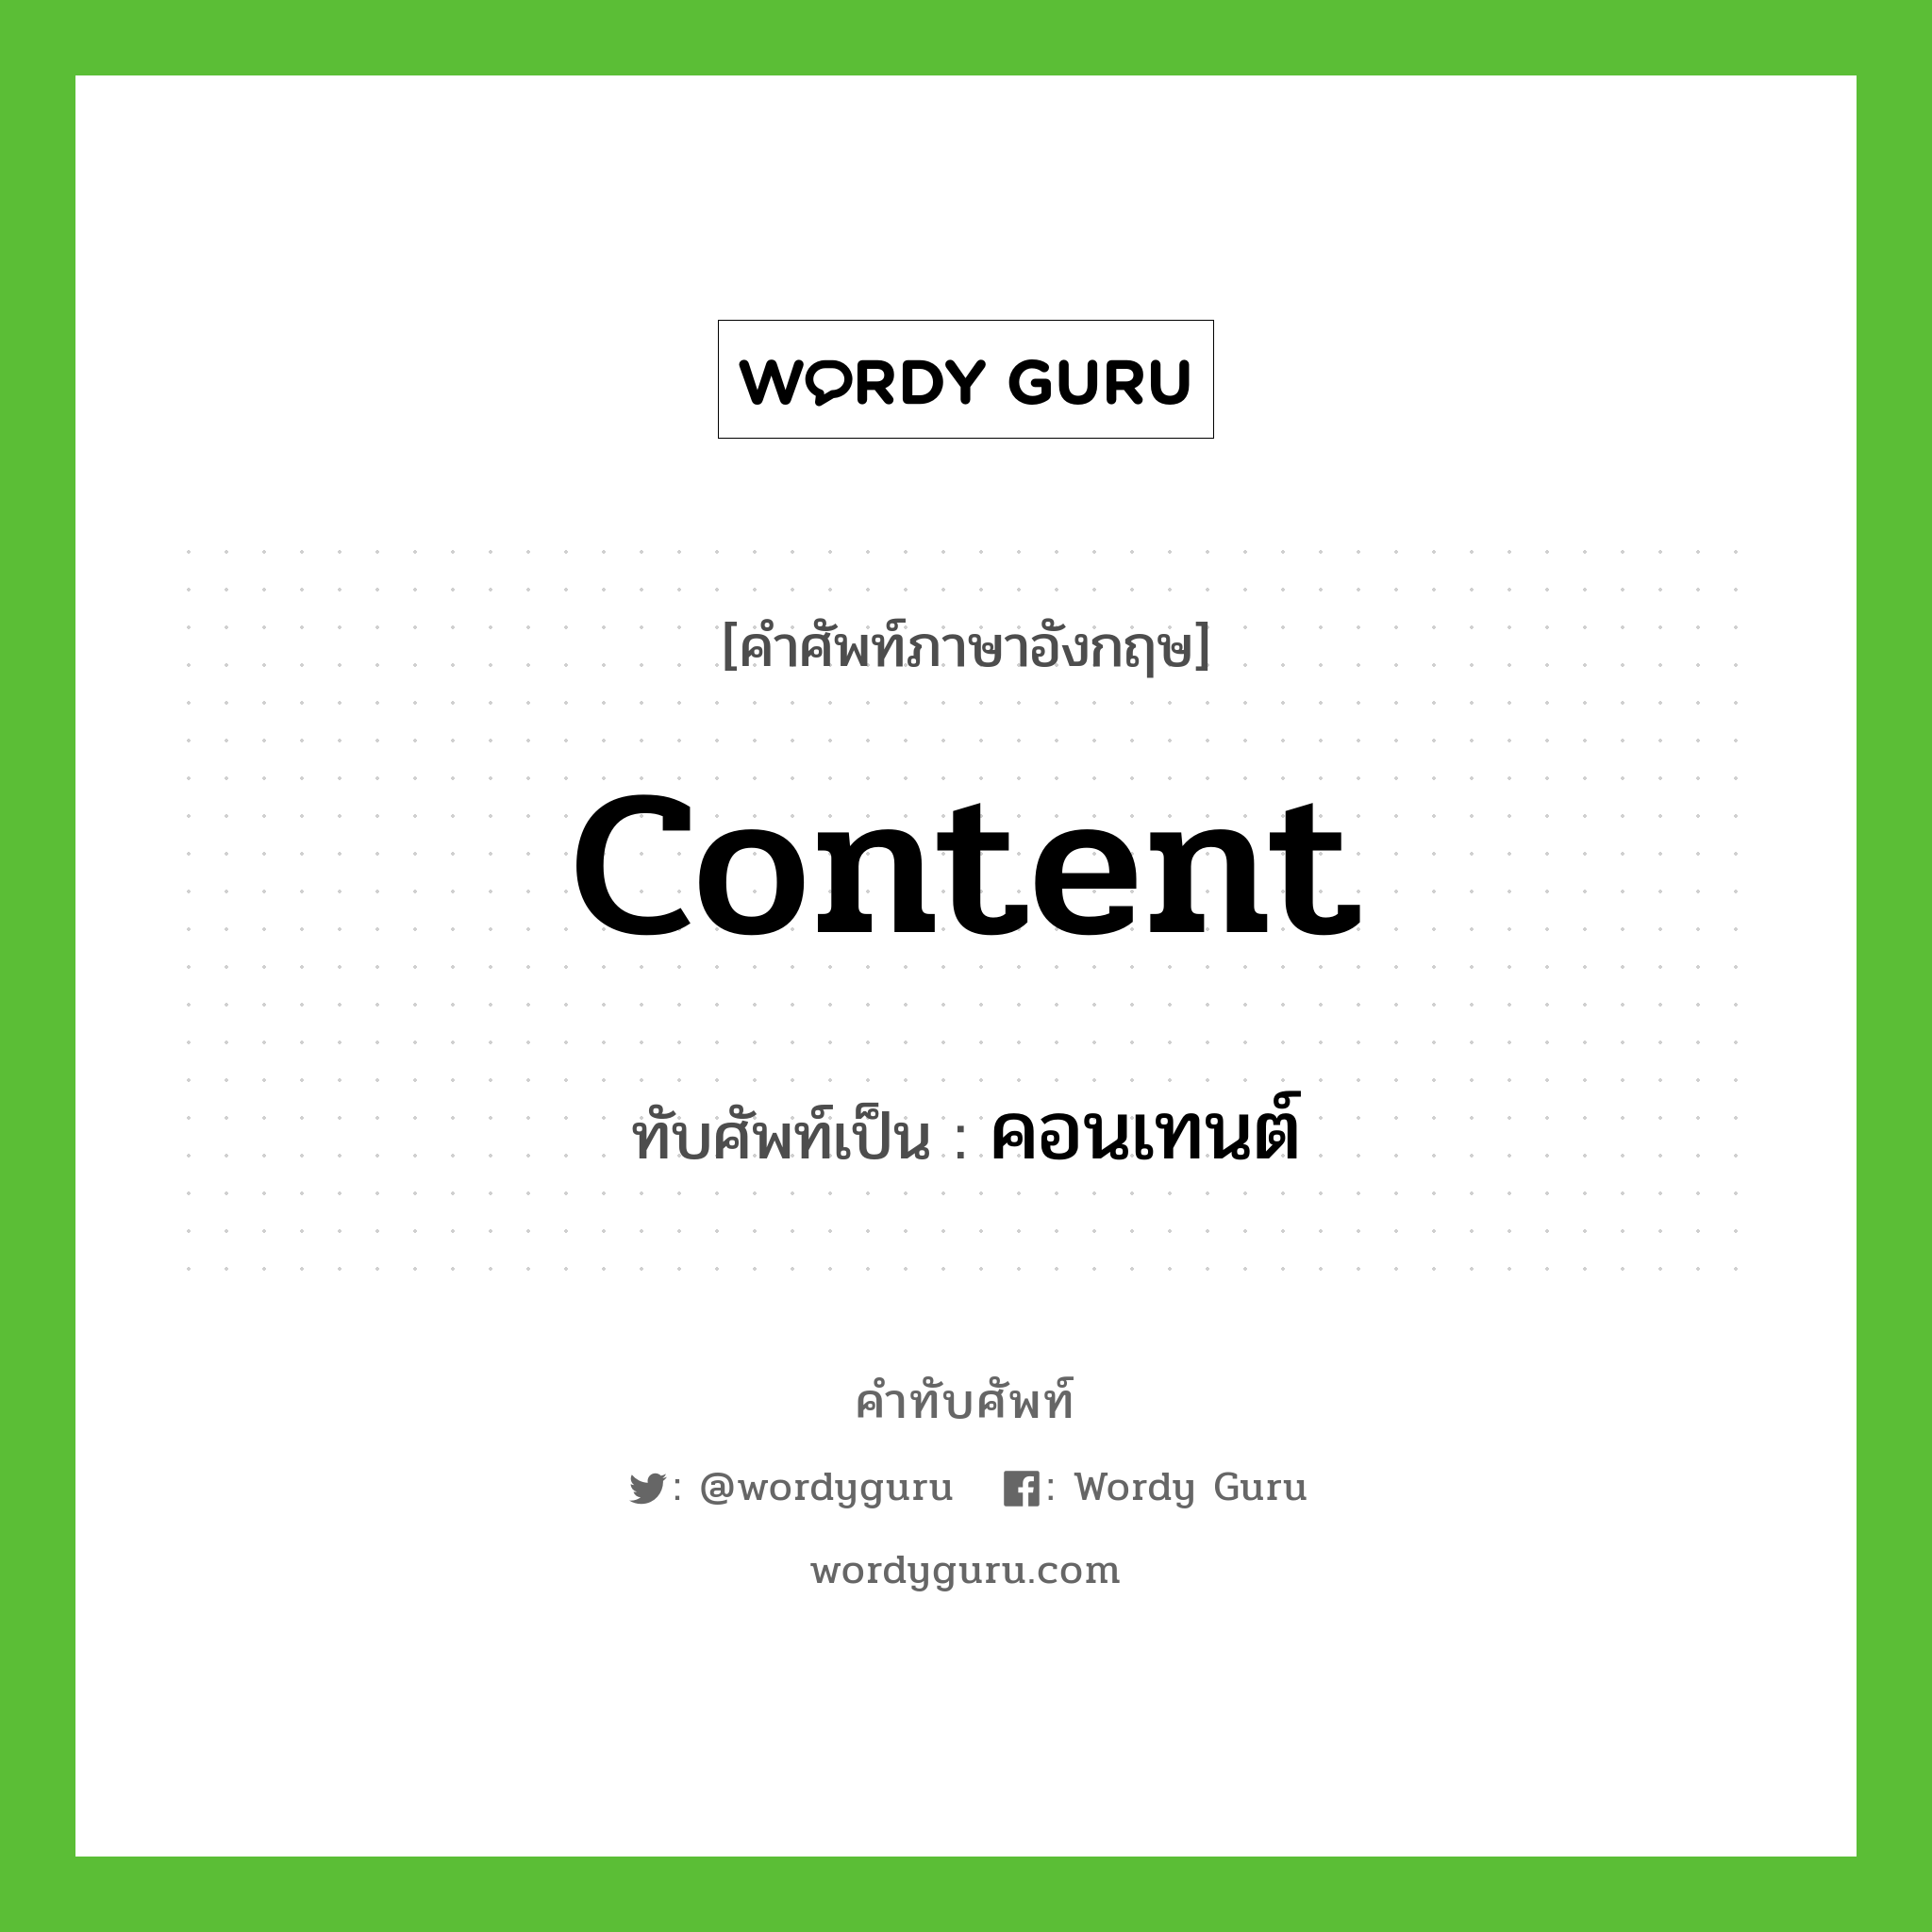 content เขียนเป็นคำไทยว่าอะไร?, คำศัพท์ภาษาอังกฤษ content ทับศัพท์เป็น คอนเทนต์